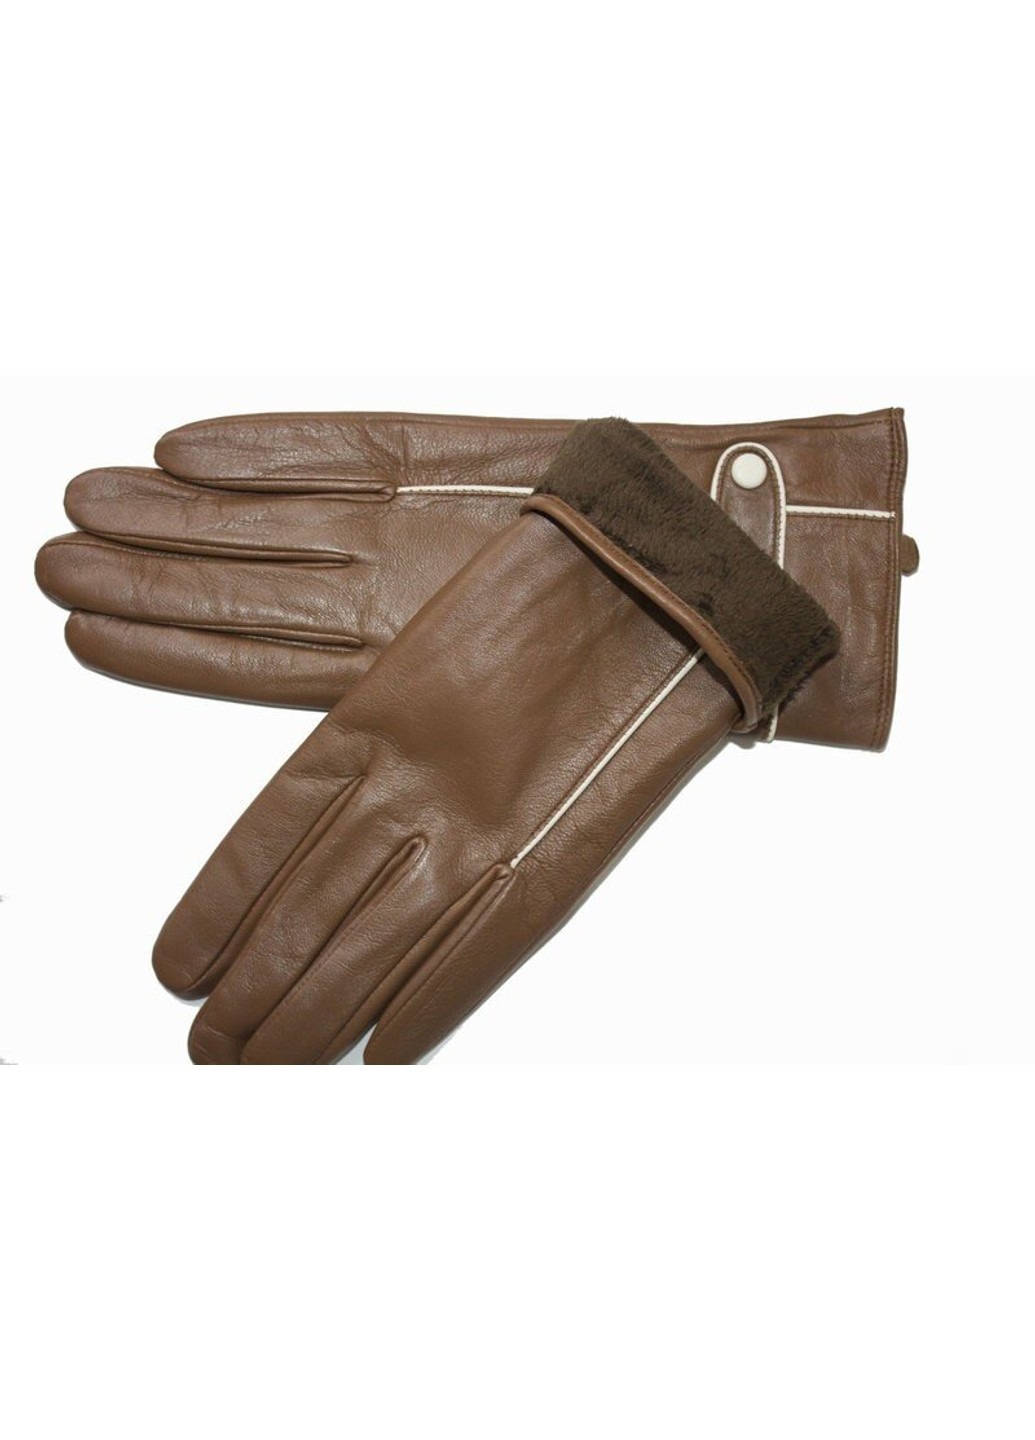 Жіночі шкіряні рукавички Shust Shust Gloves (266142950)